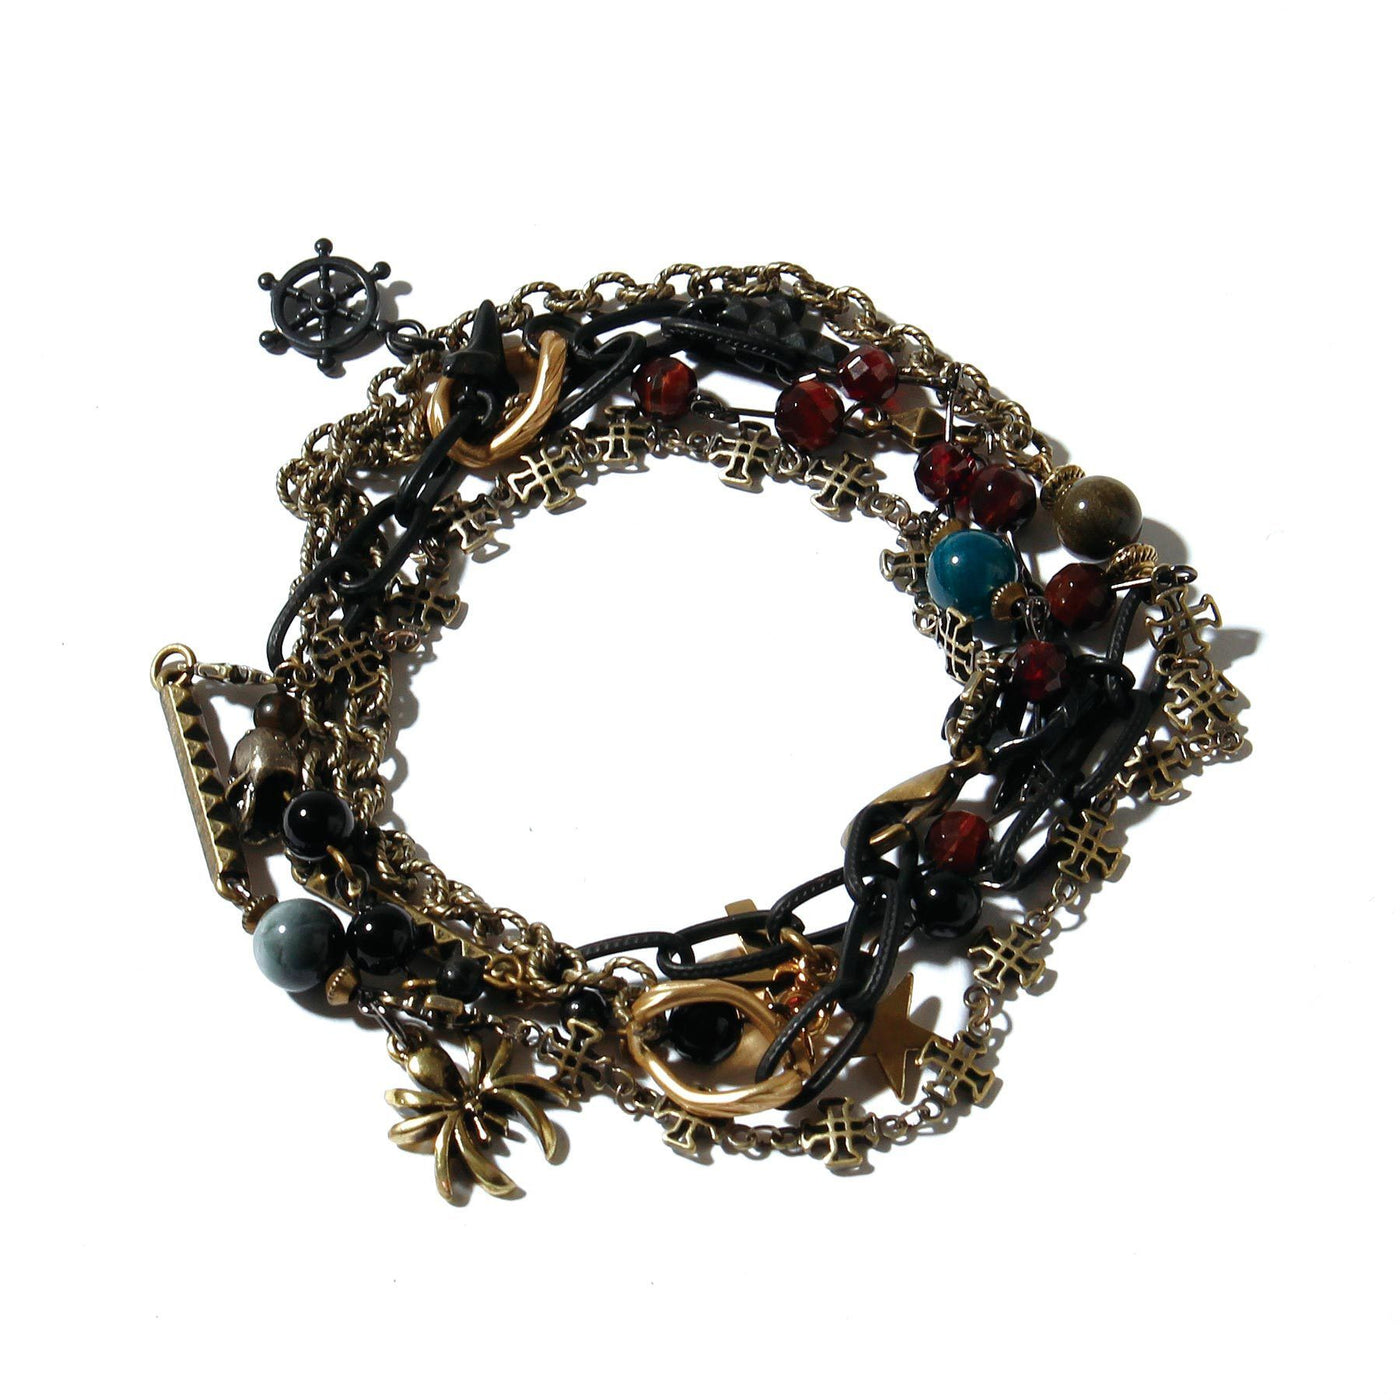 Pirate's Necklace Bracelet / BLACK